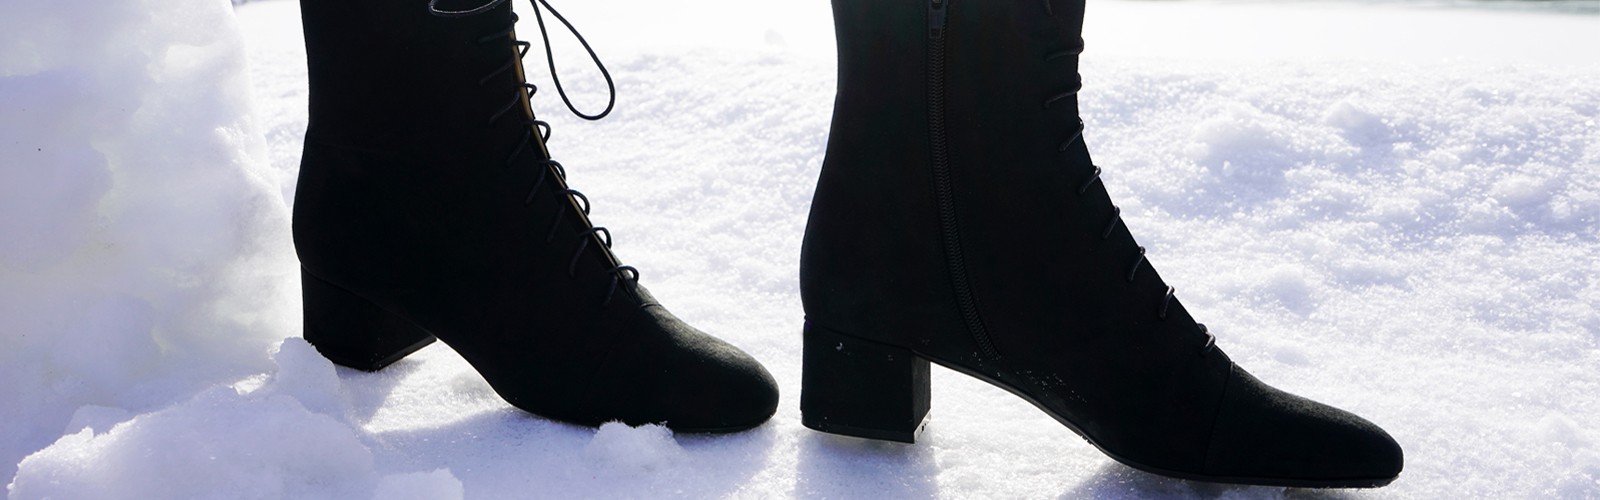 Chaussures d'hiver végan femme